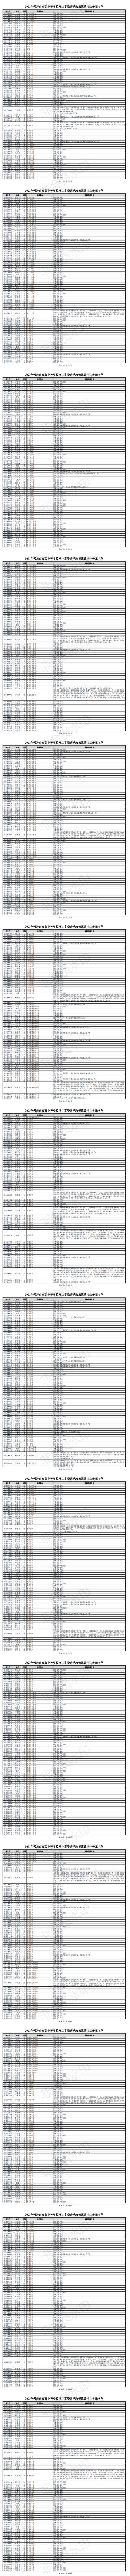 2021天津中考升学政策照顾考生名单公示啦！这也太多了吧？